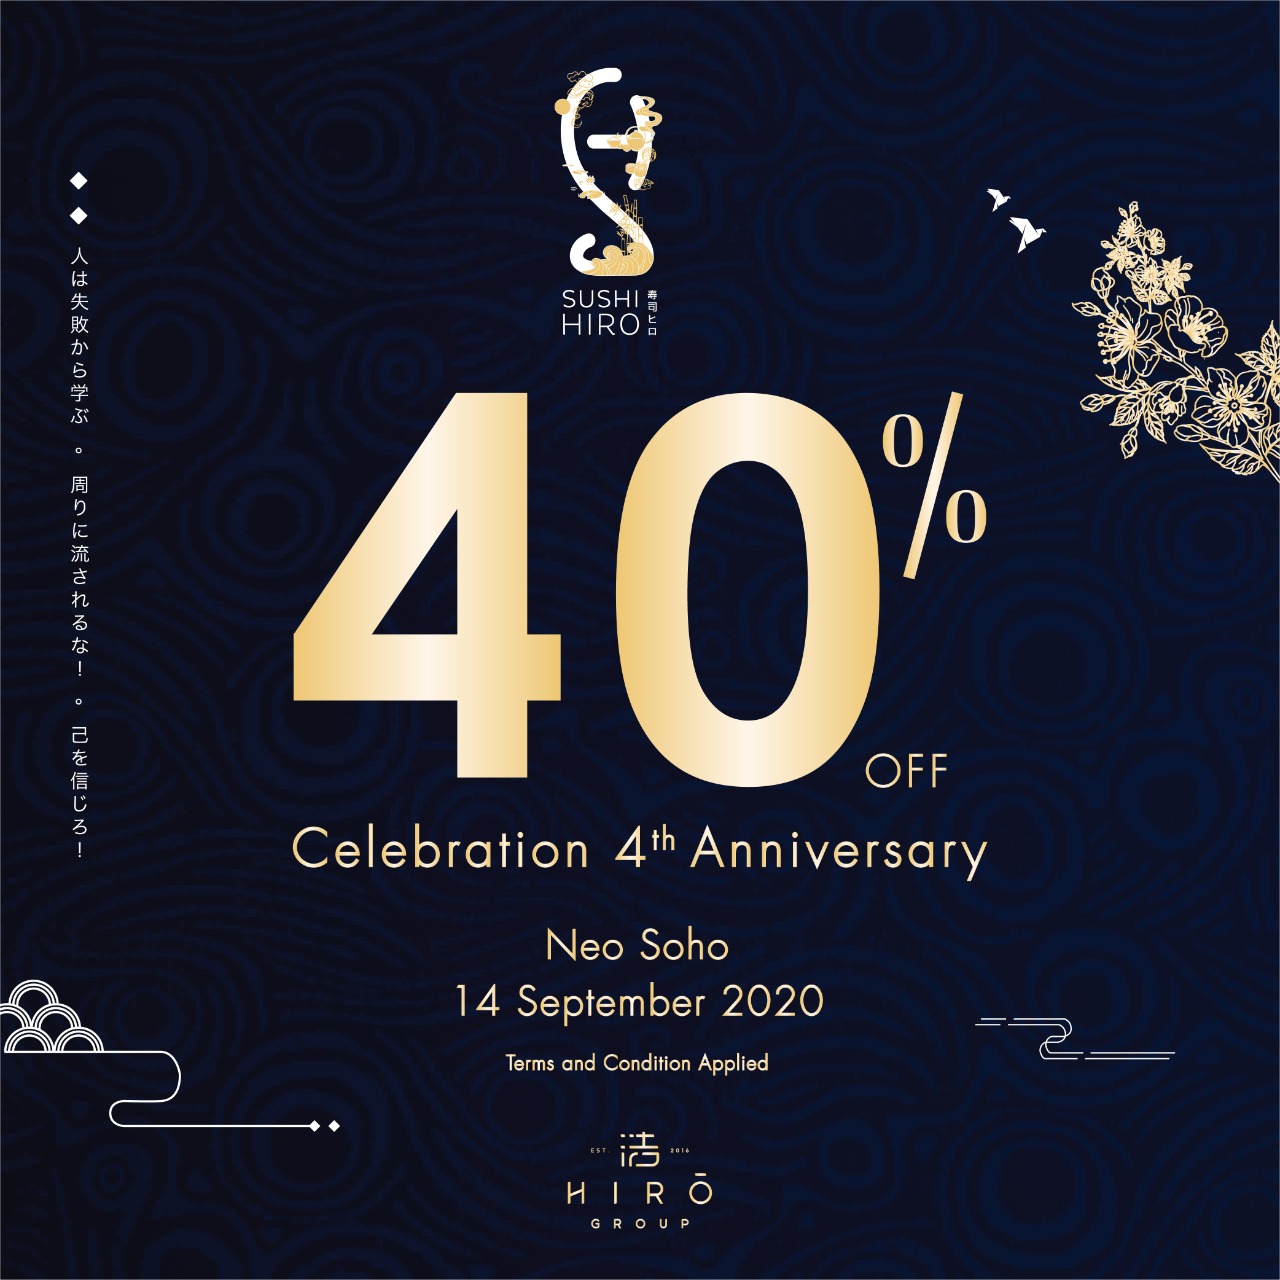 SUSHI HIRO Celebrate 4th Anniversary! – NEO SOHO JAKARTA